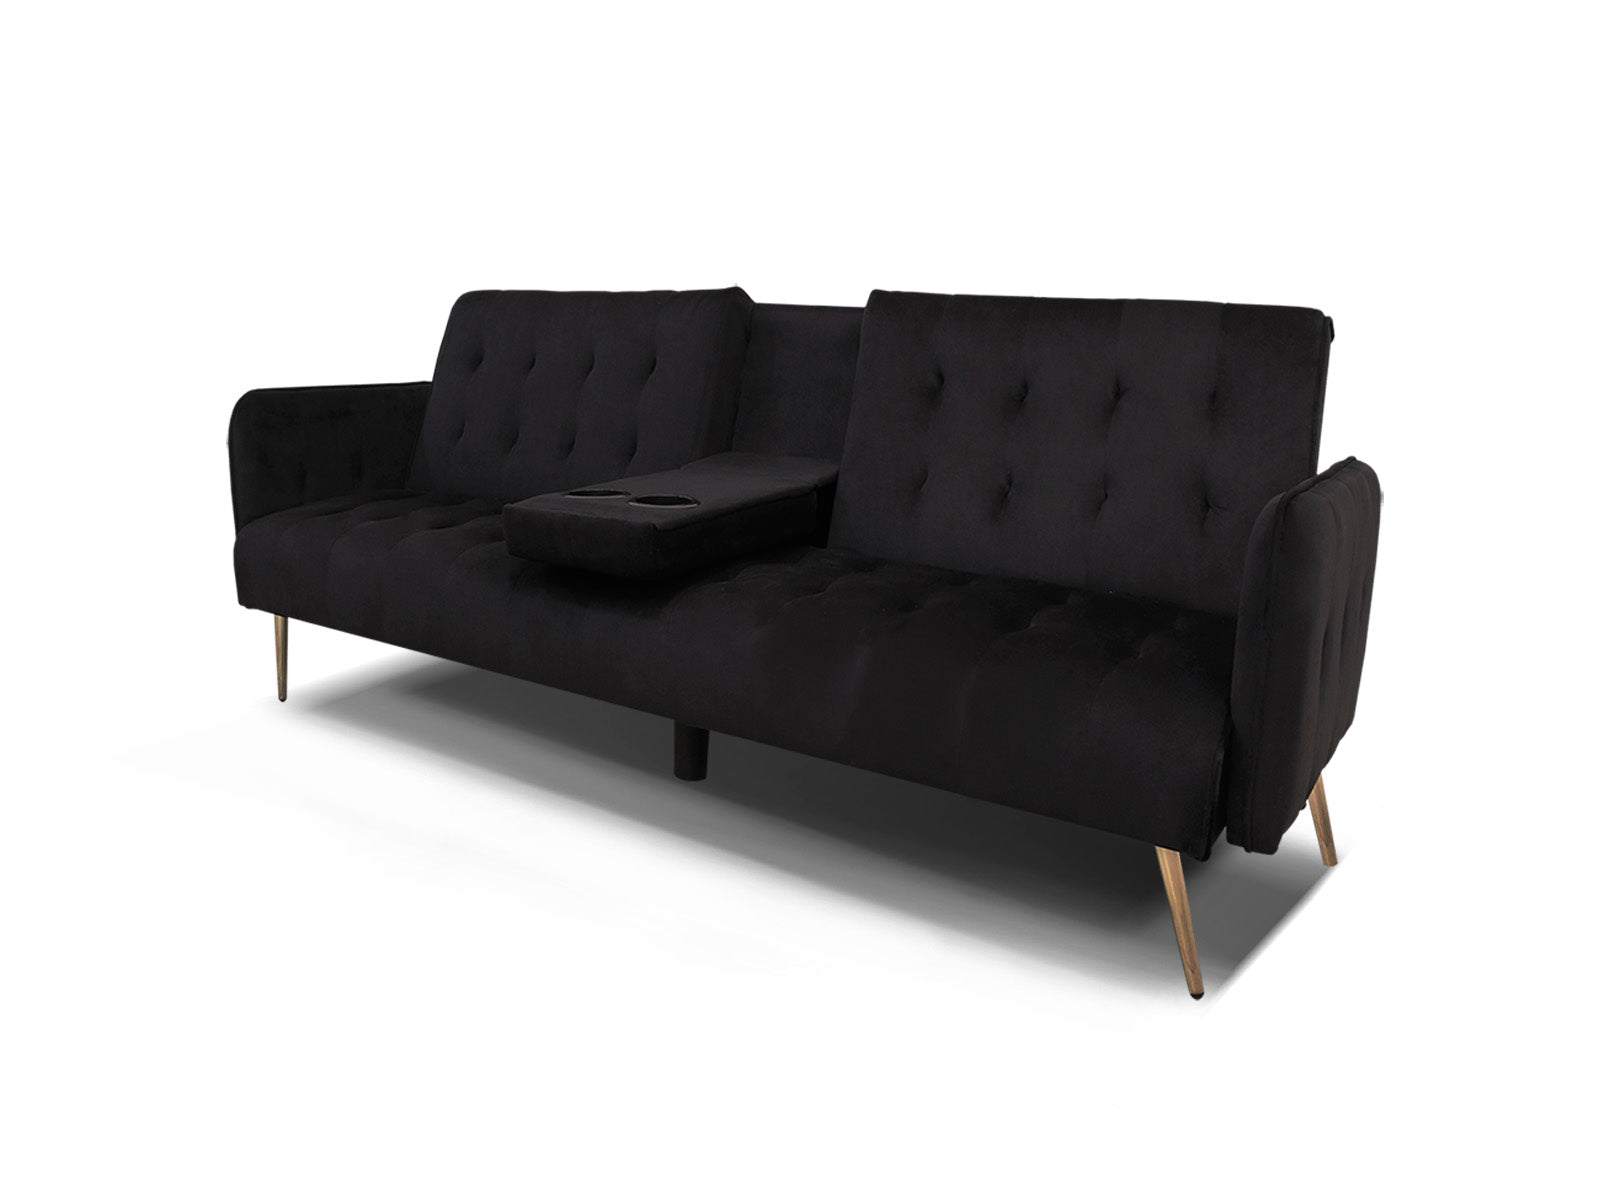 Sofa Cama con Portavasos FH 192cm